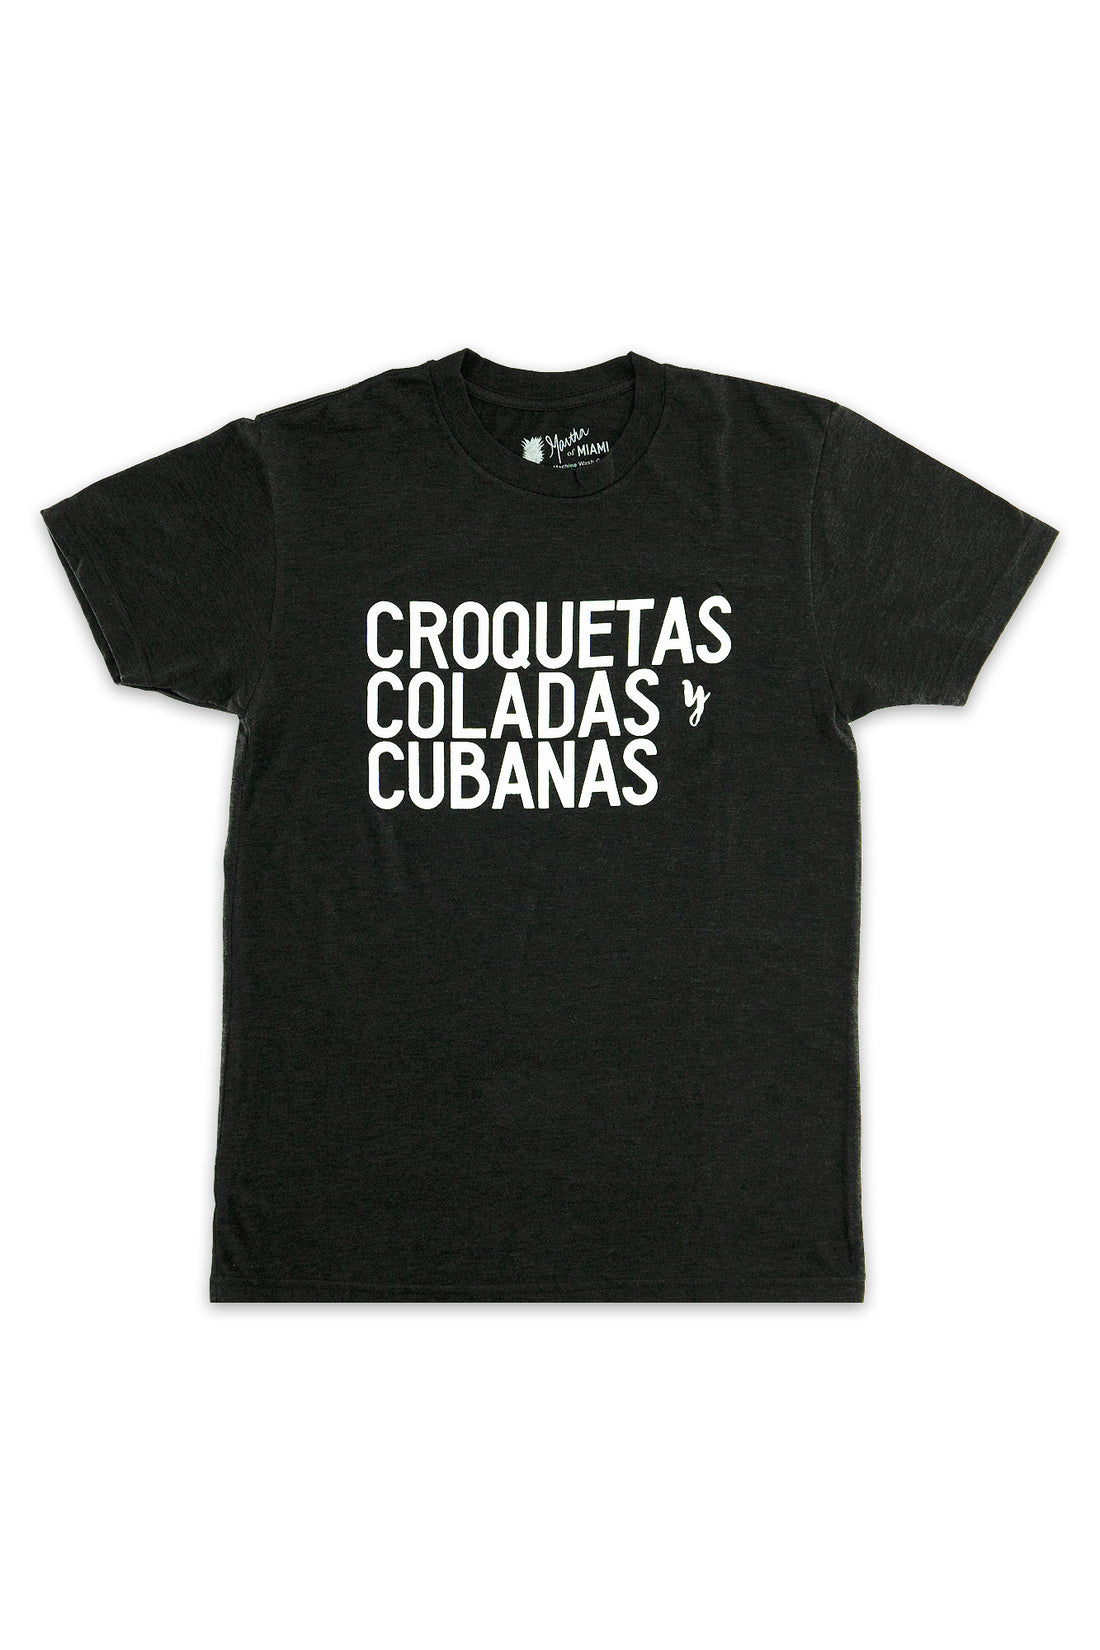 Croquetas, Coladas, y Cubanas T-Shirt